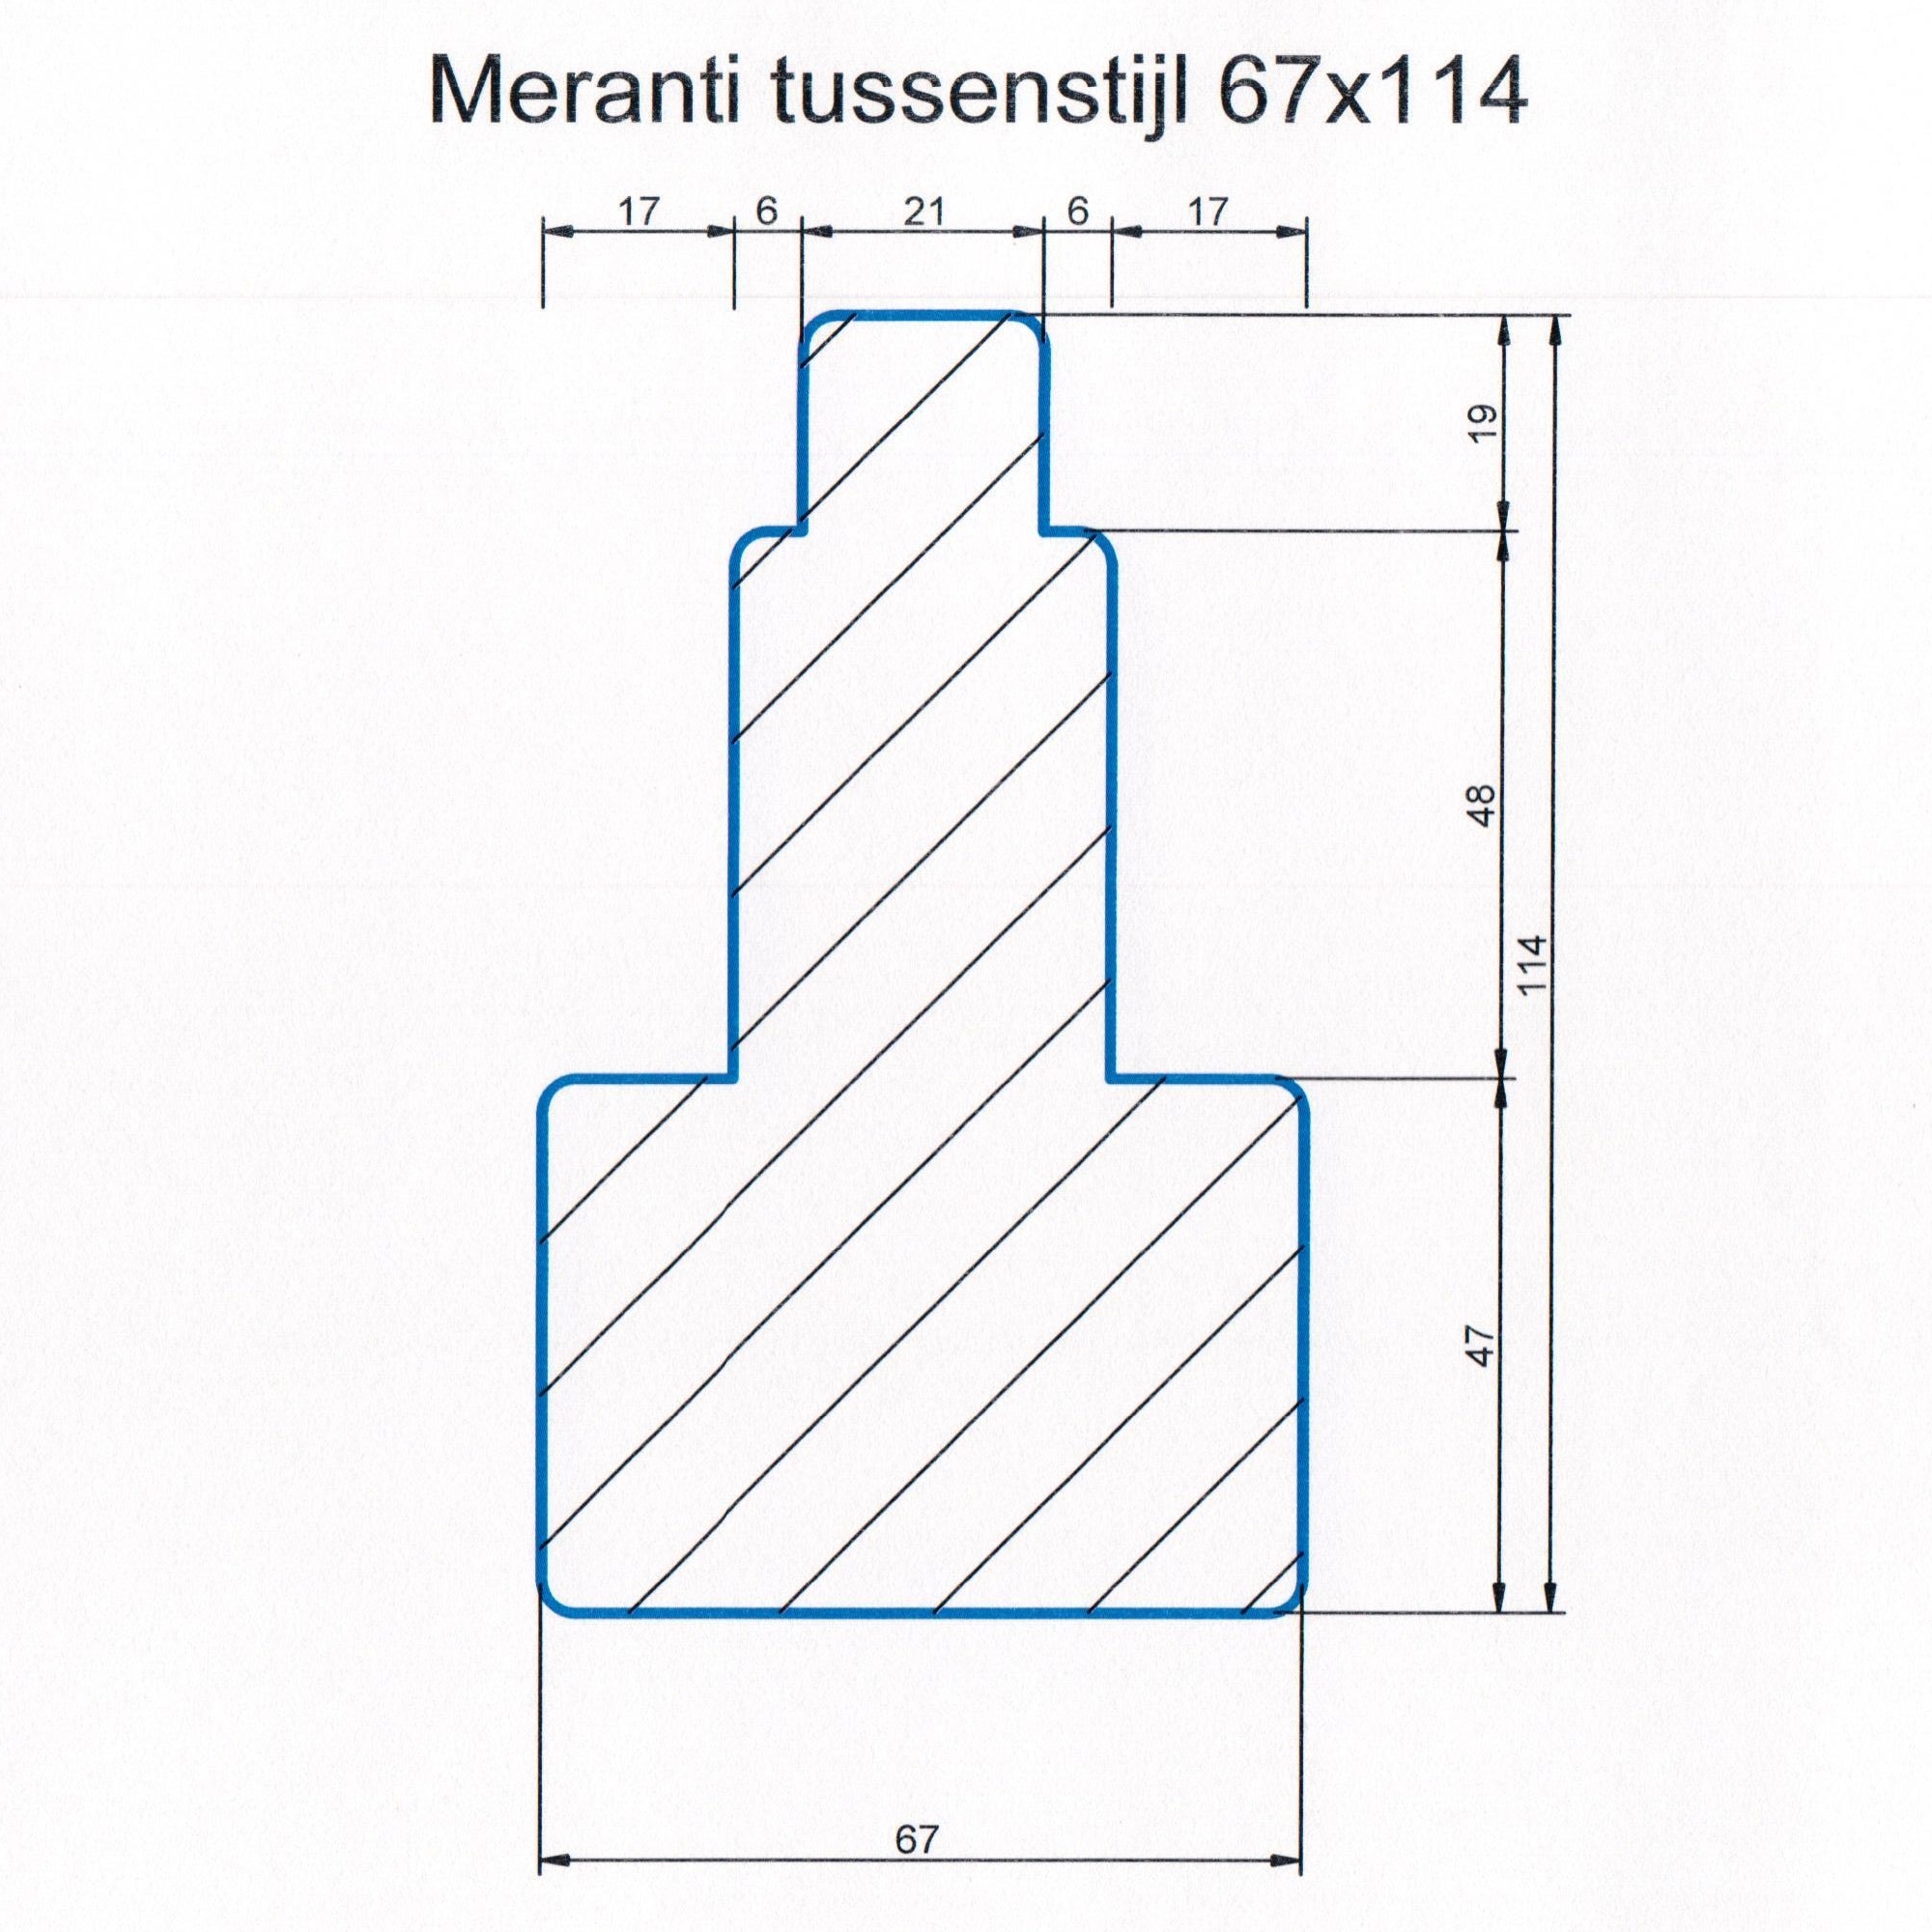 Meranti 67x114 kozijnhout Tussenstijl L=1500 mm